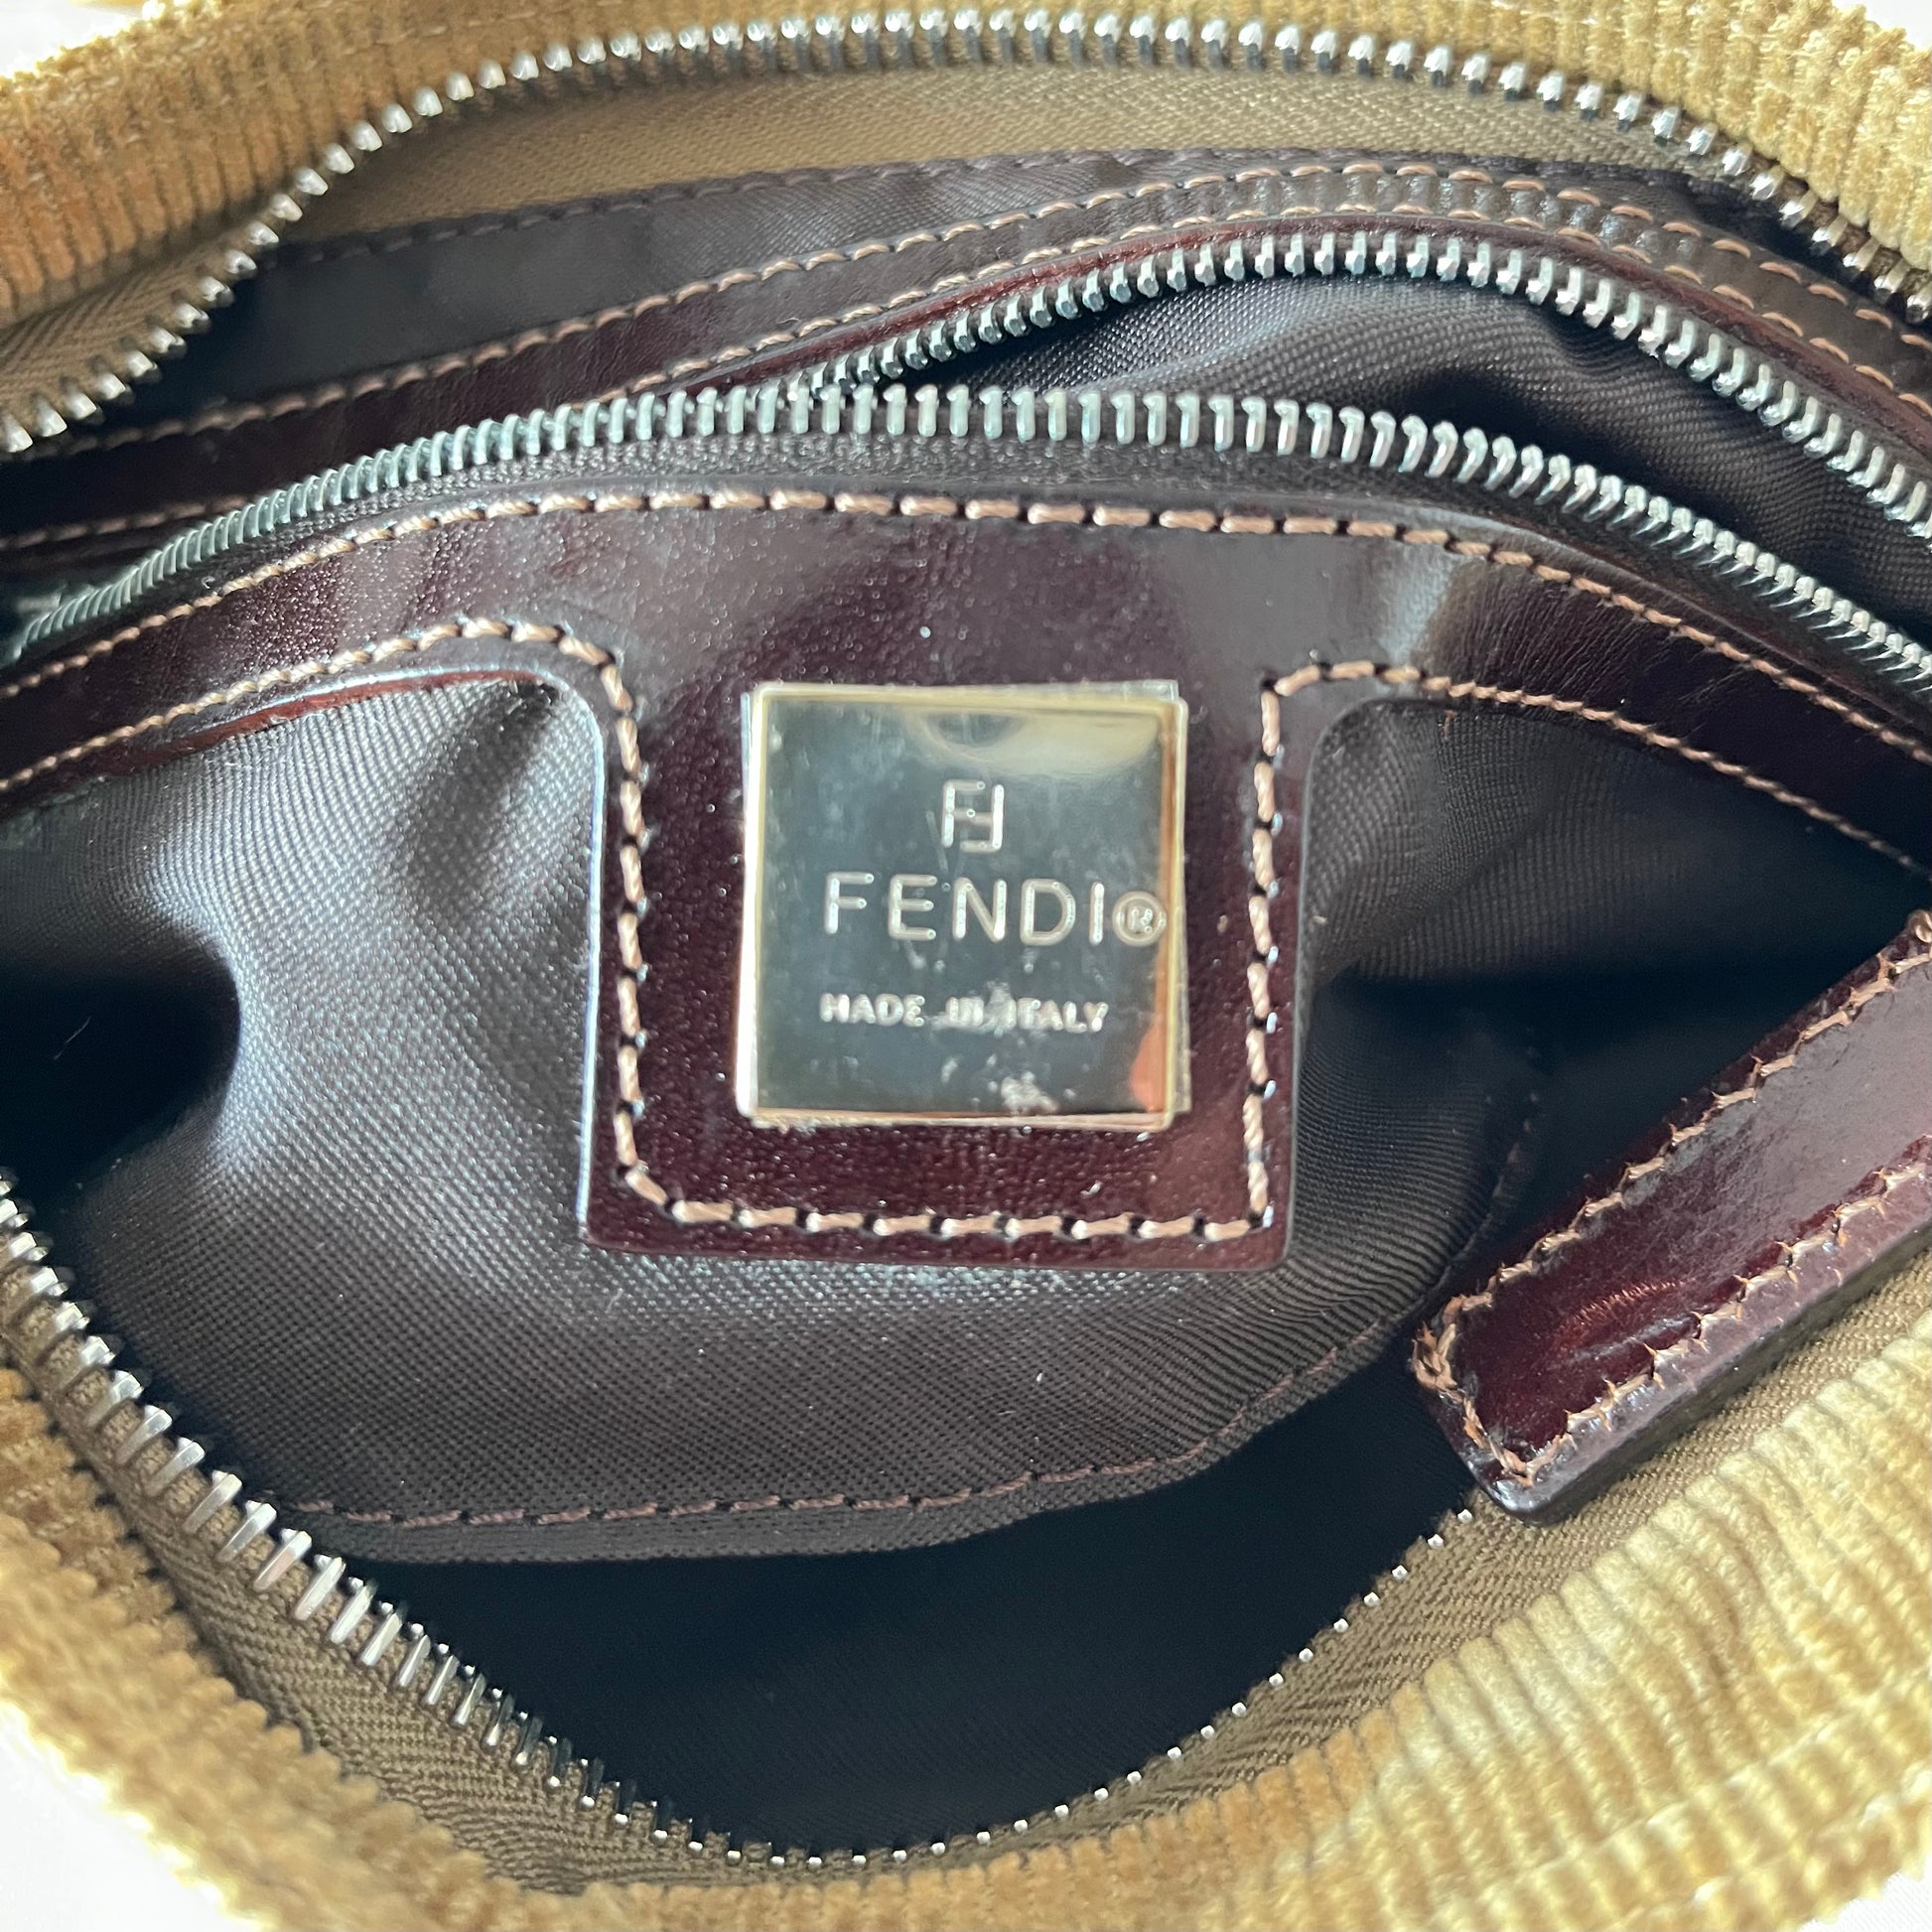 Fendi – Another Life NY